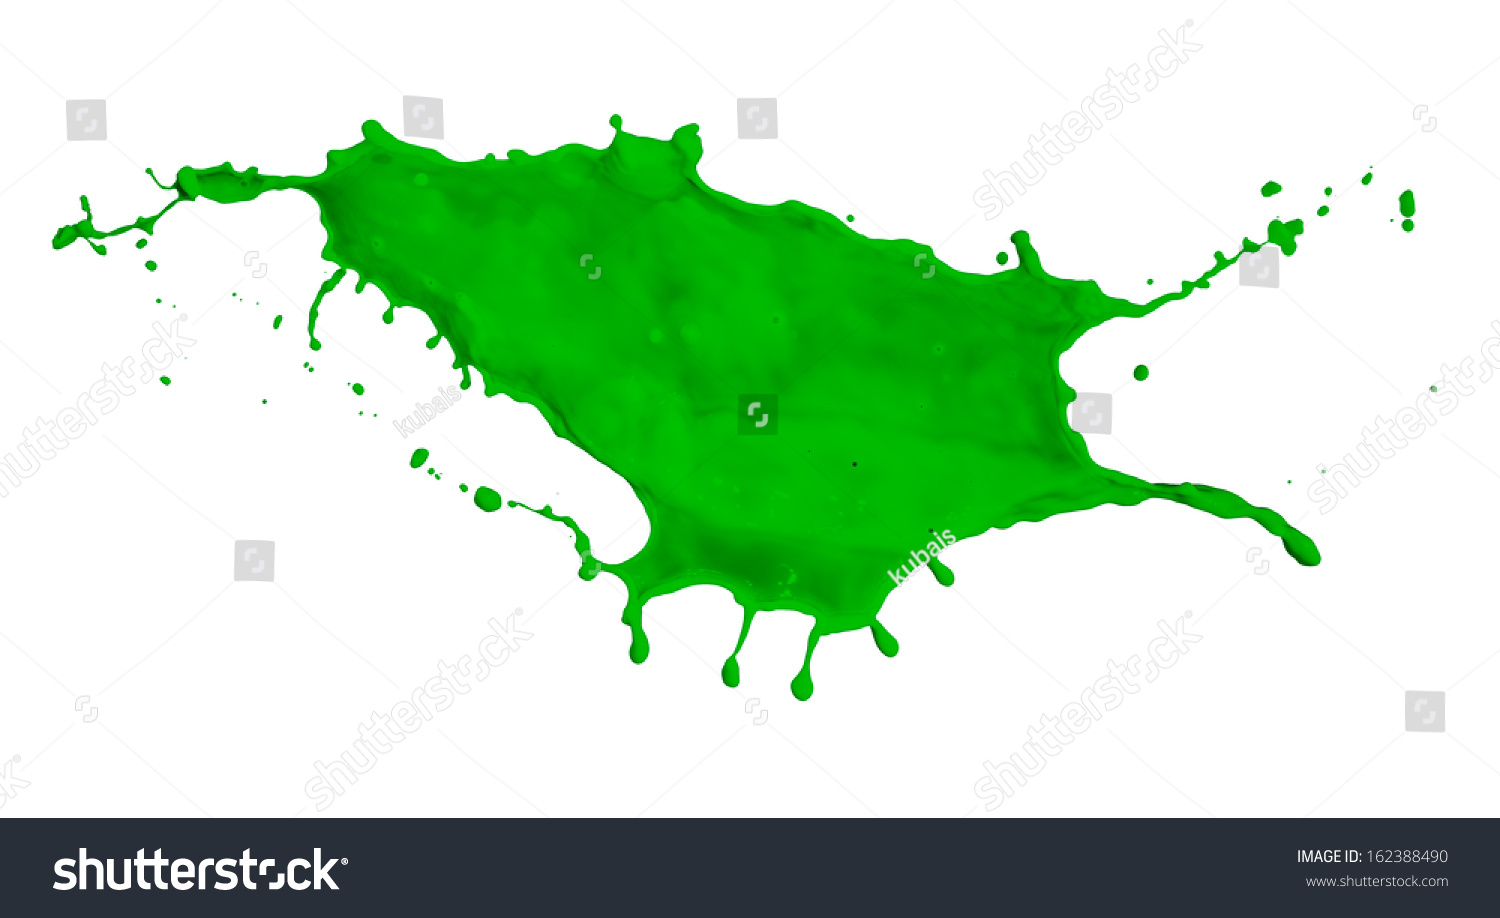 Stock Photo Green Paint Splash Isolated On White Background 162388490 